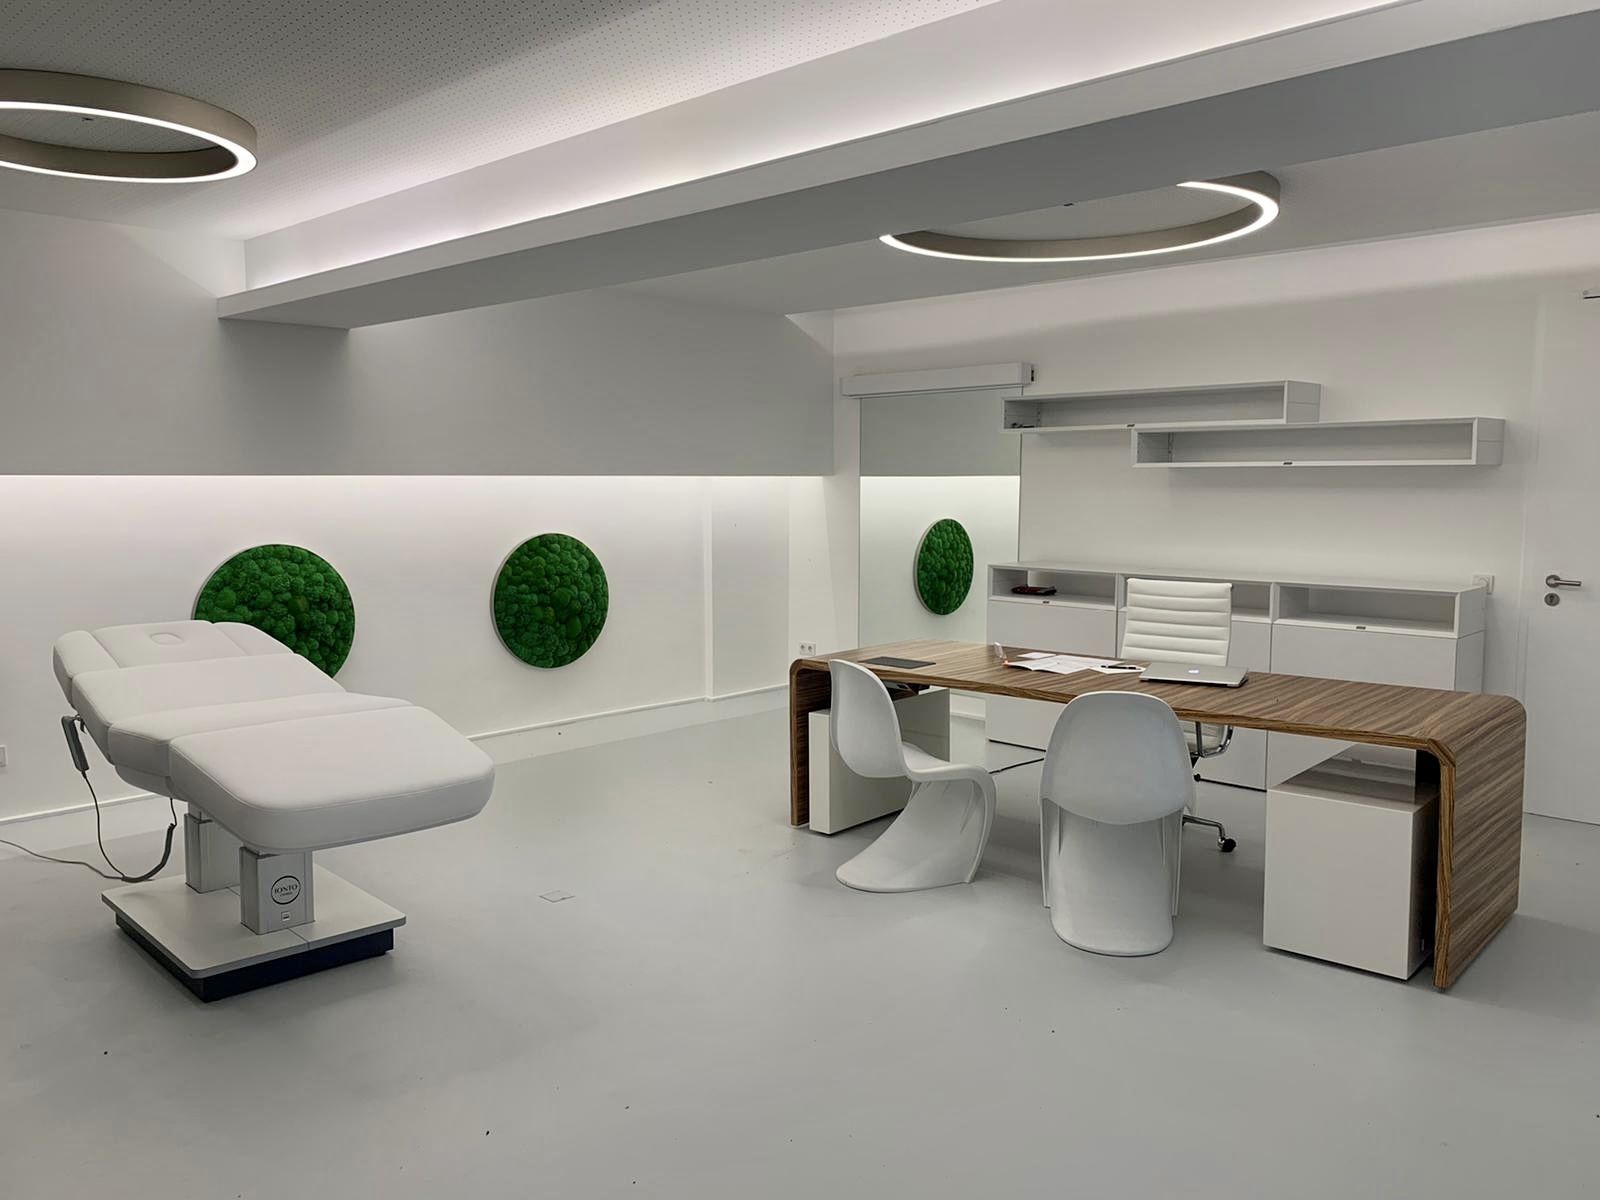 Das Beratungszimmer wird in einem anderen Blickwinkel fotografiert, das den Schreibtisch und den Patientenstuhl zeigt.